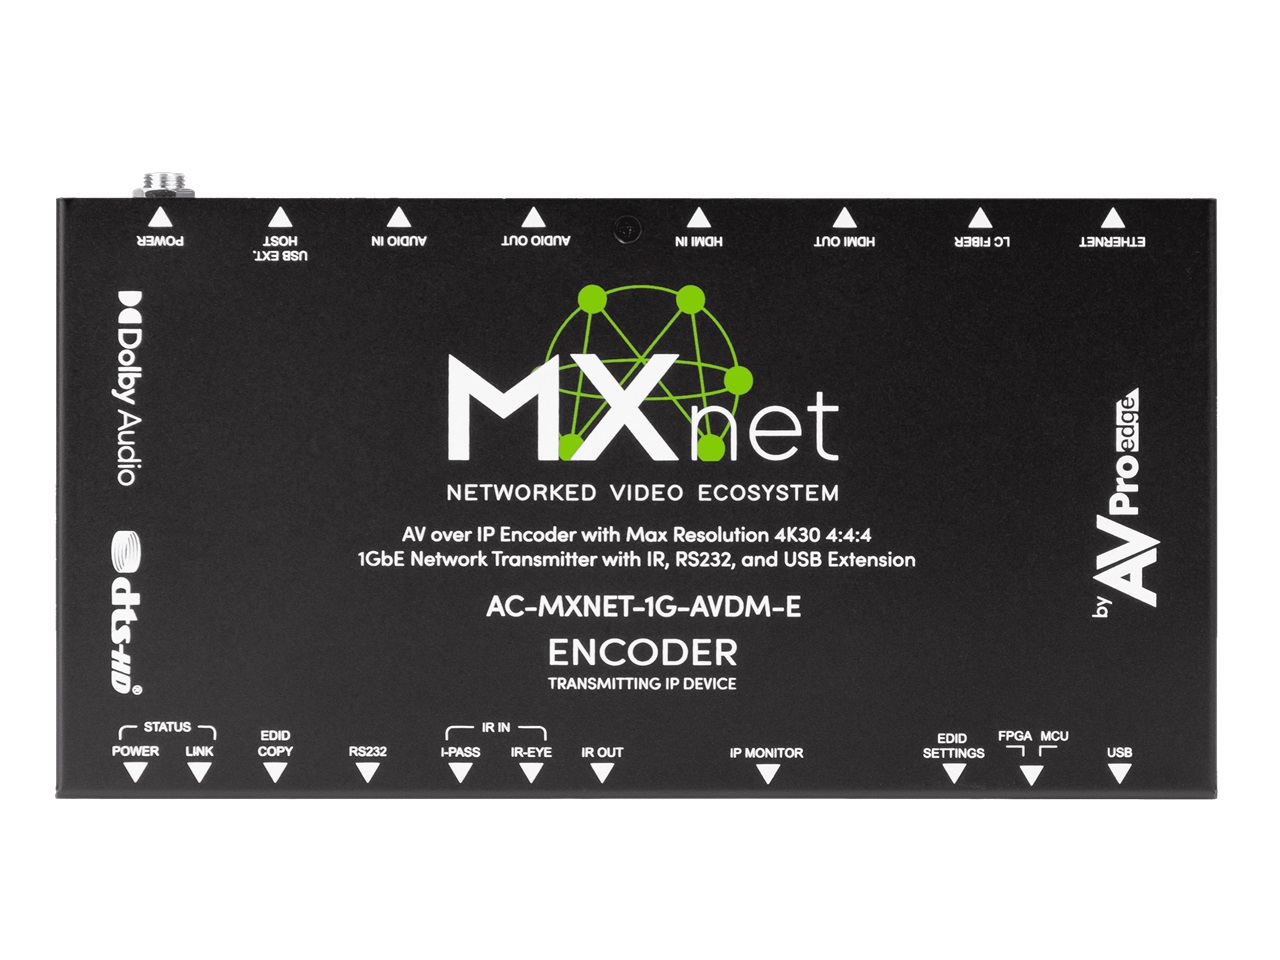 AC-MXNET-1G-AVDM-E MXNet 1G Downmixing Encoder by AVPro Edge